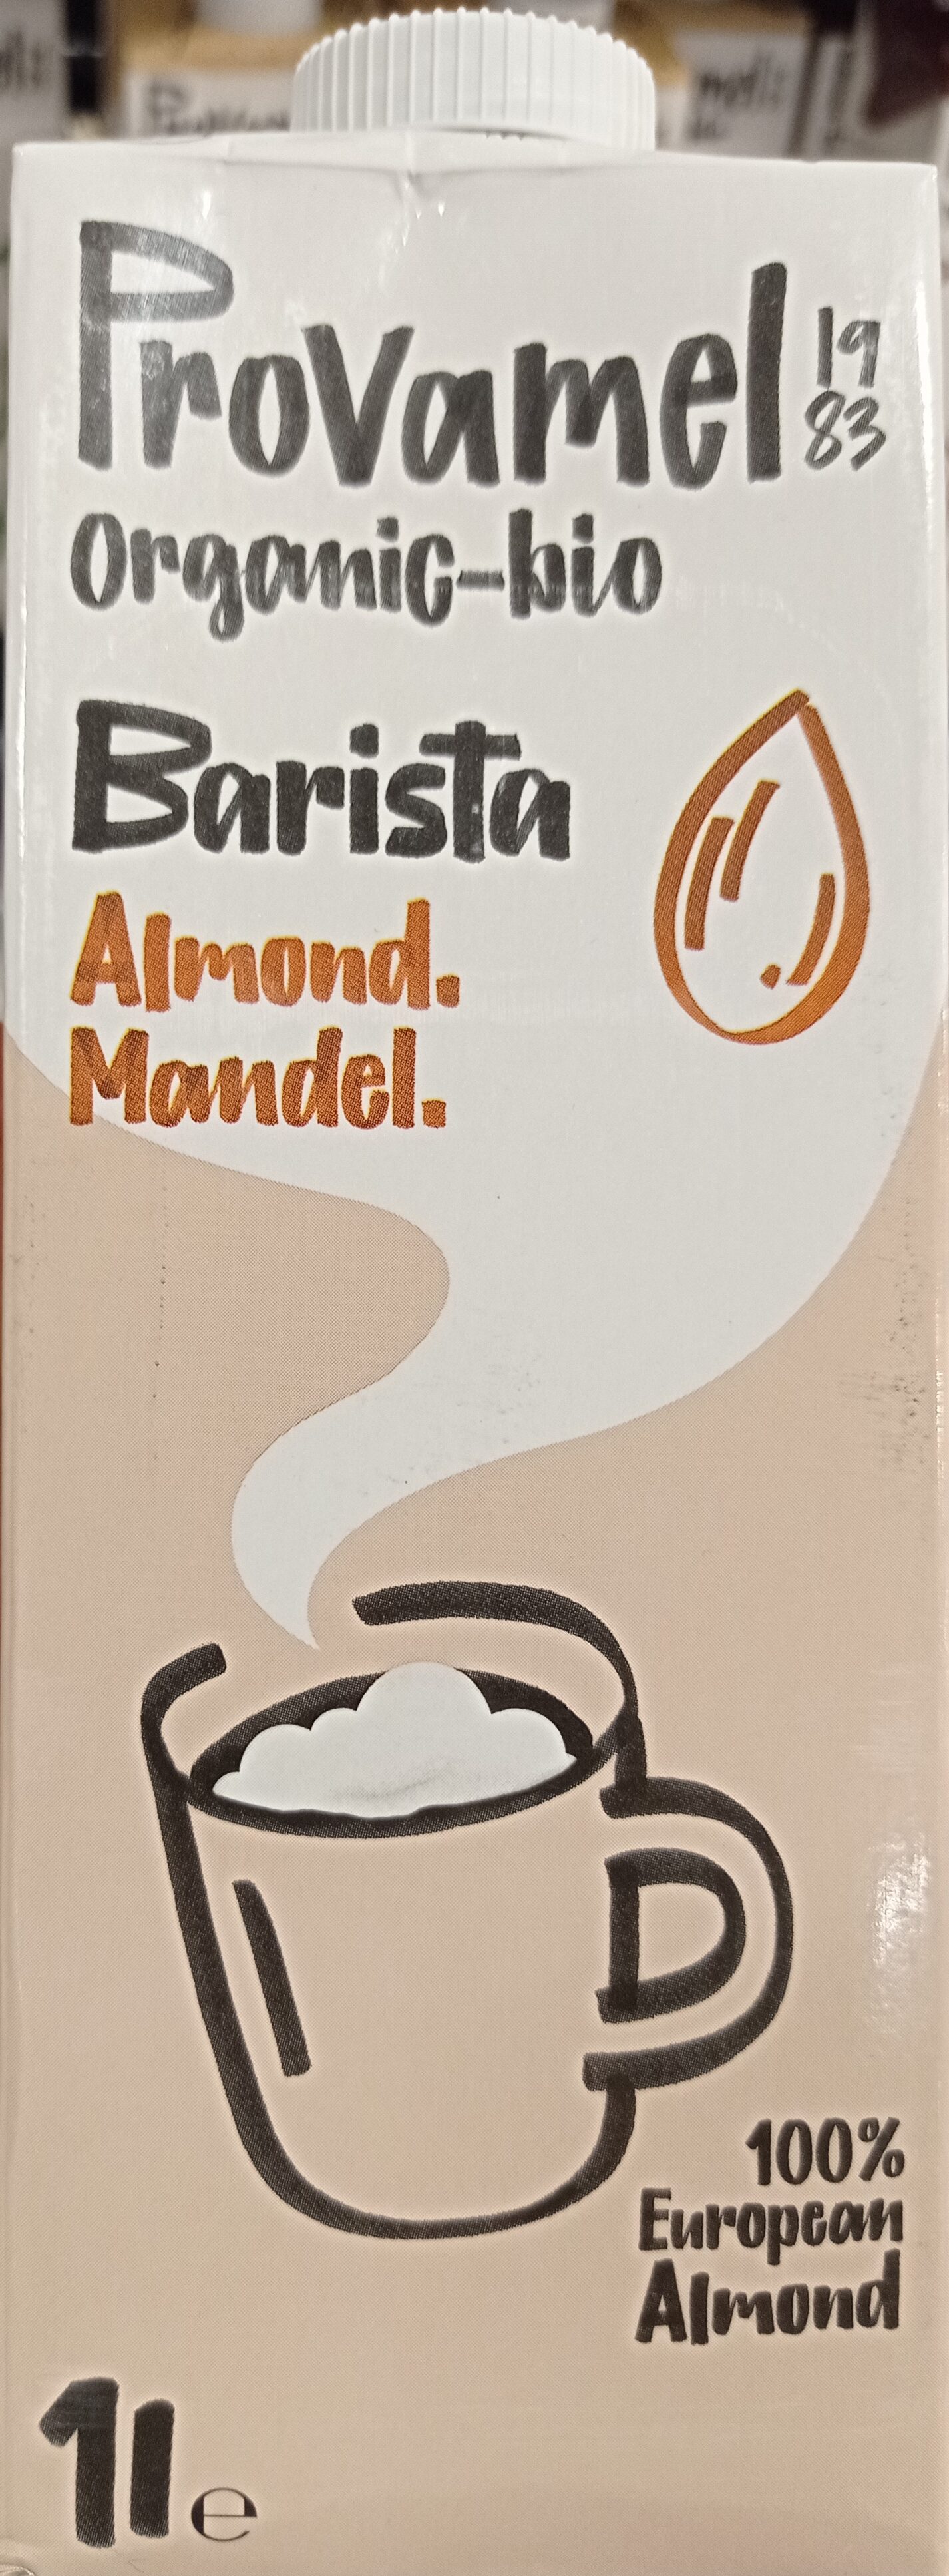 Barista Almond - Produkt - en